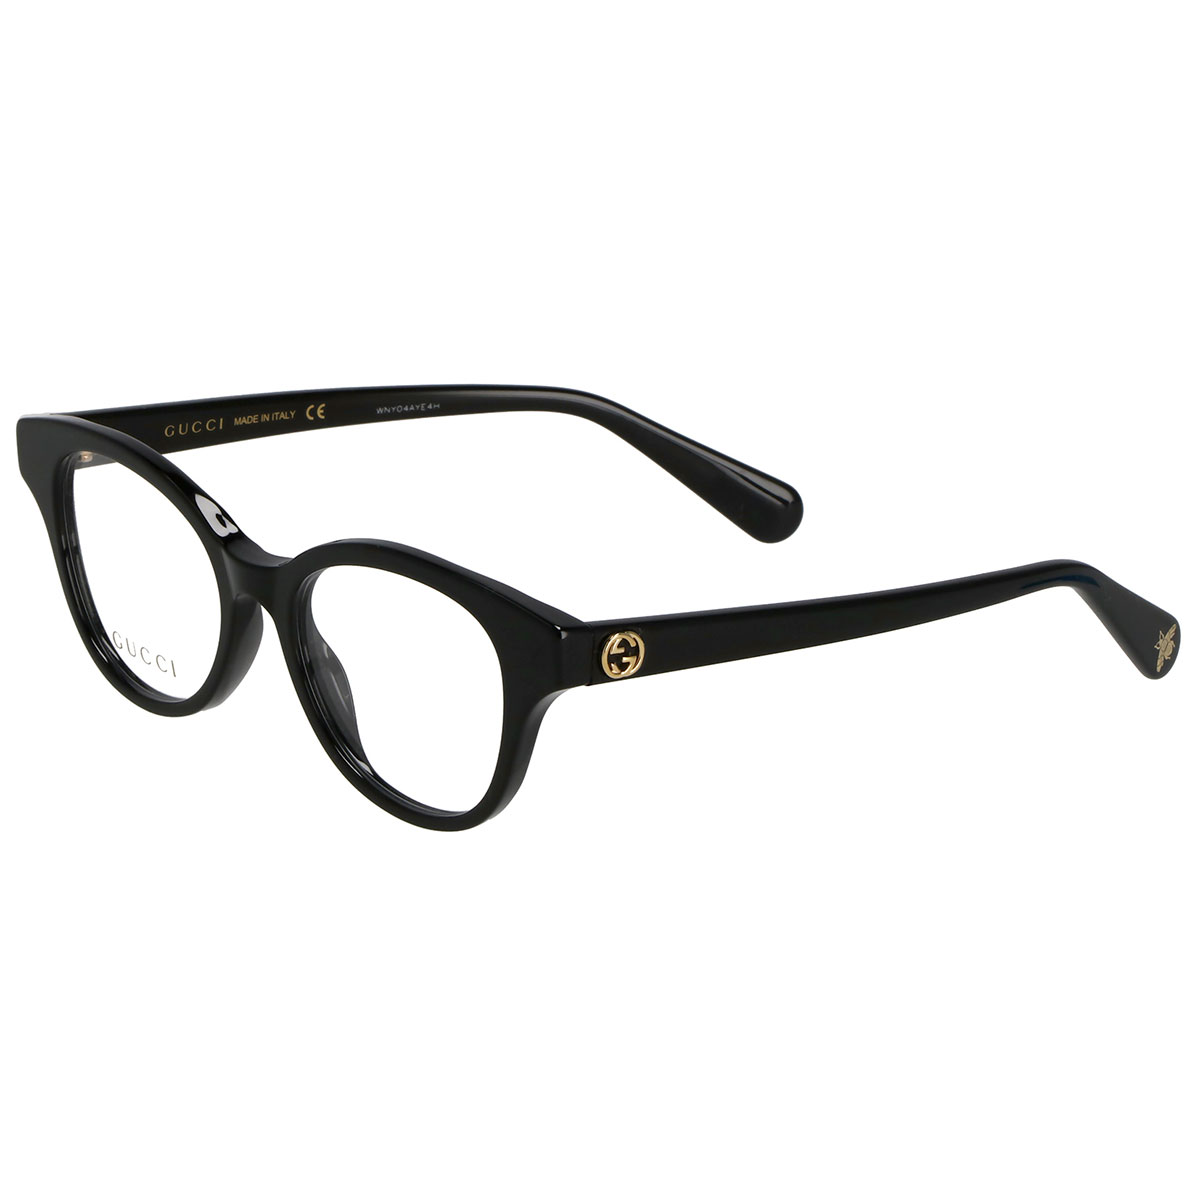 グッチ GUCCI オプティカルフレーム メガネ フレーム GG0924O-001 眼鏡 フレームのみ レディース ブラックメガネフレーム ブランド 眼鏡